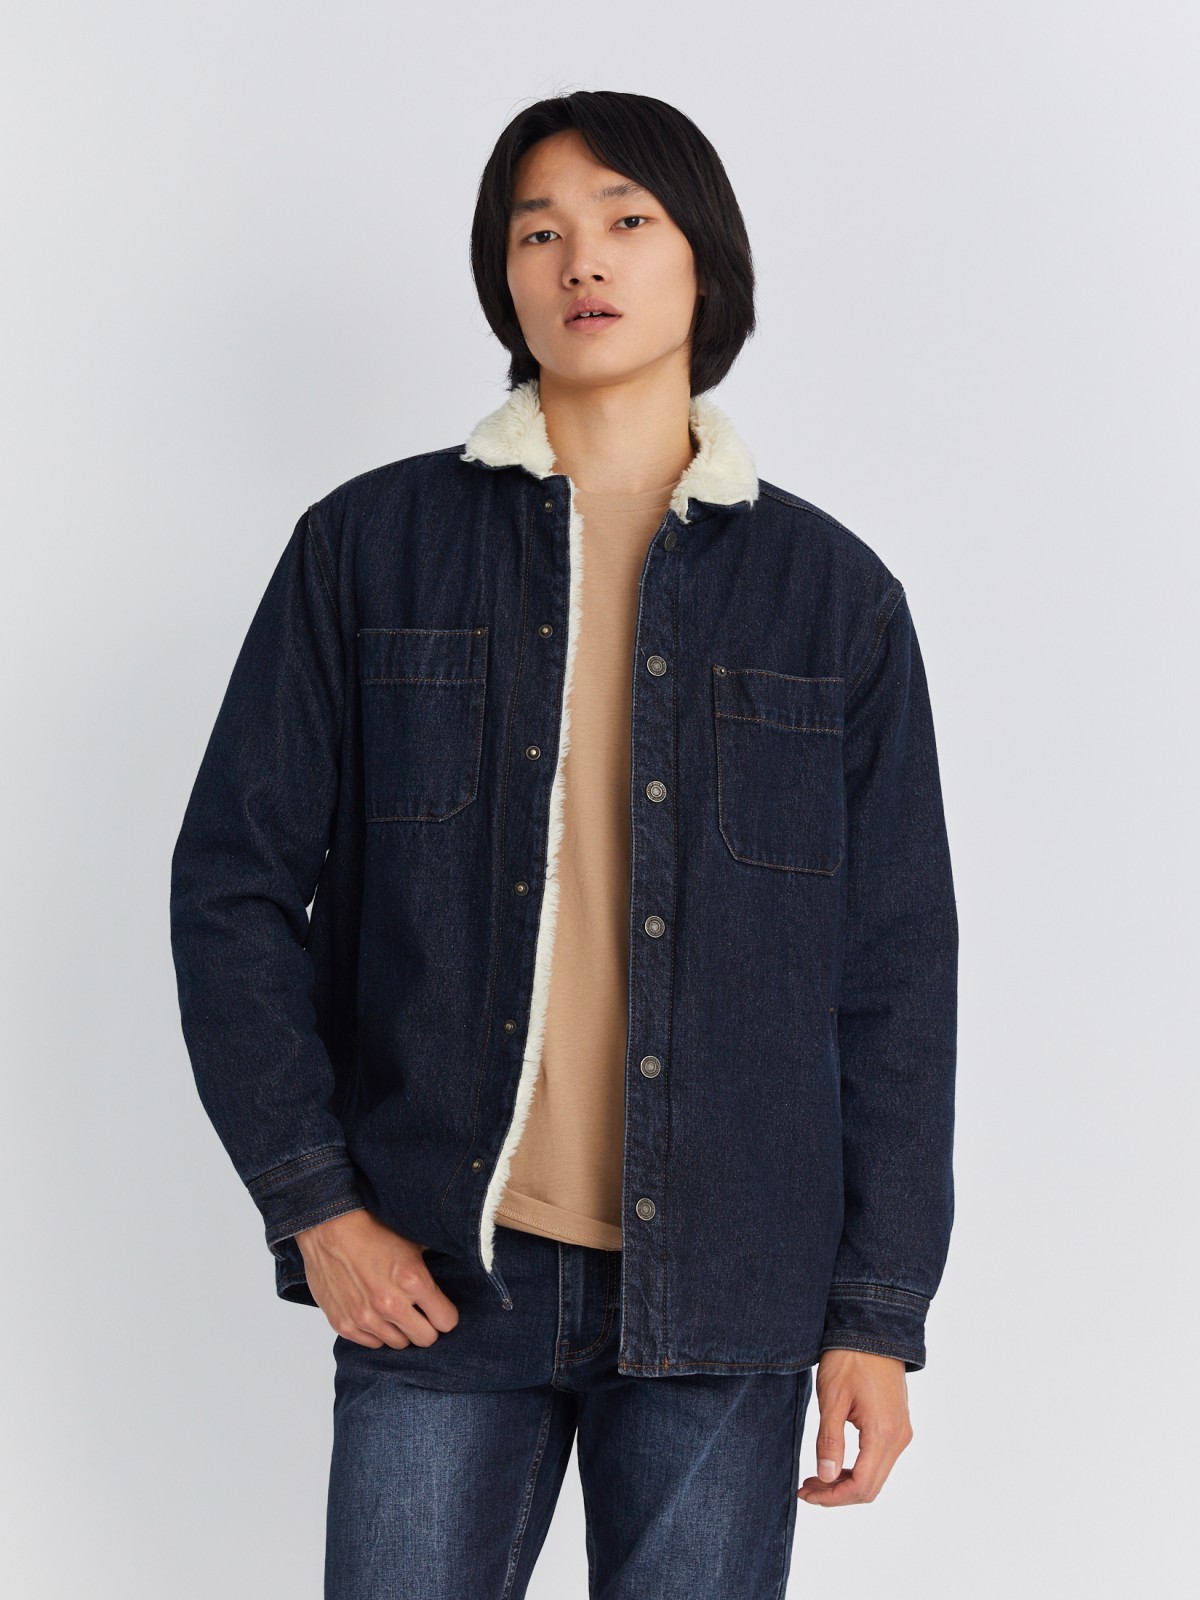 Утеплённая джинсовая куртка-рубашка с искусственным мехом zolla 212335W4S044, цвет голубой, размер S